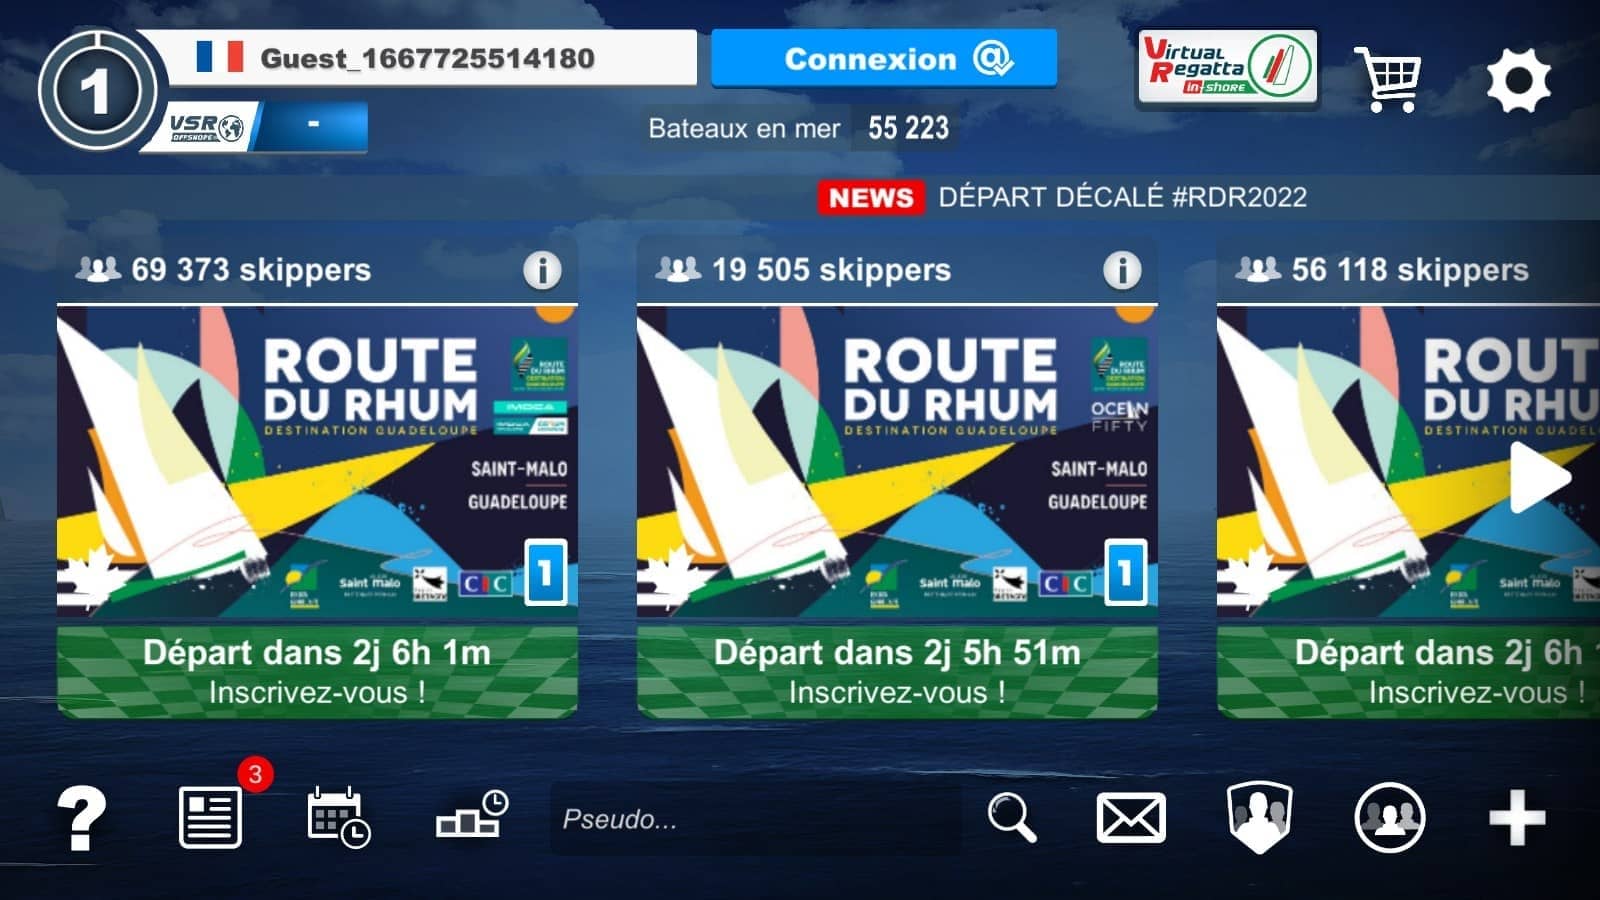 Route du Rhum - Destination Guadeloupe 2022 sur Virtual Regatta Offshore